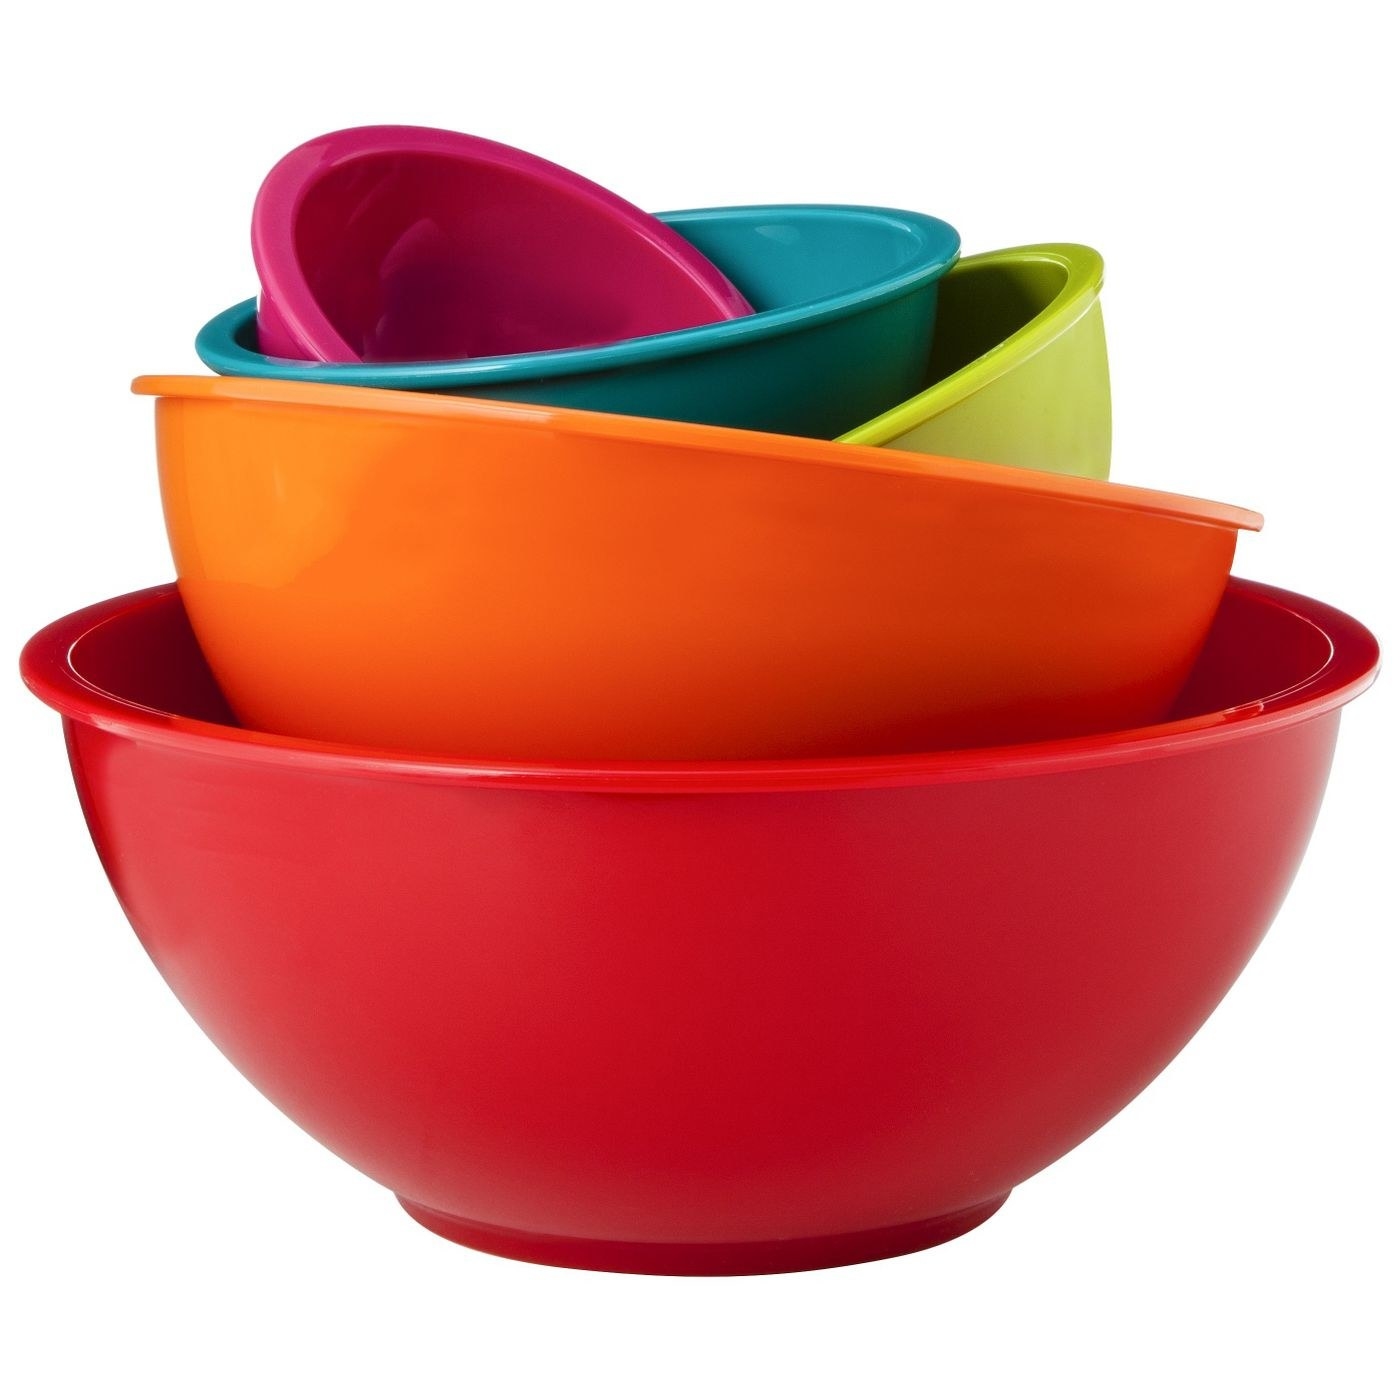 Rainbow mixing bowls